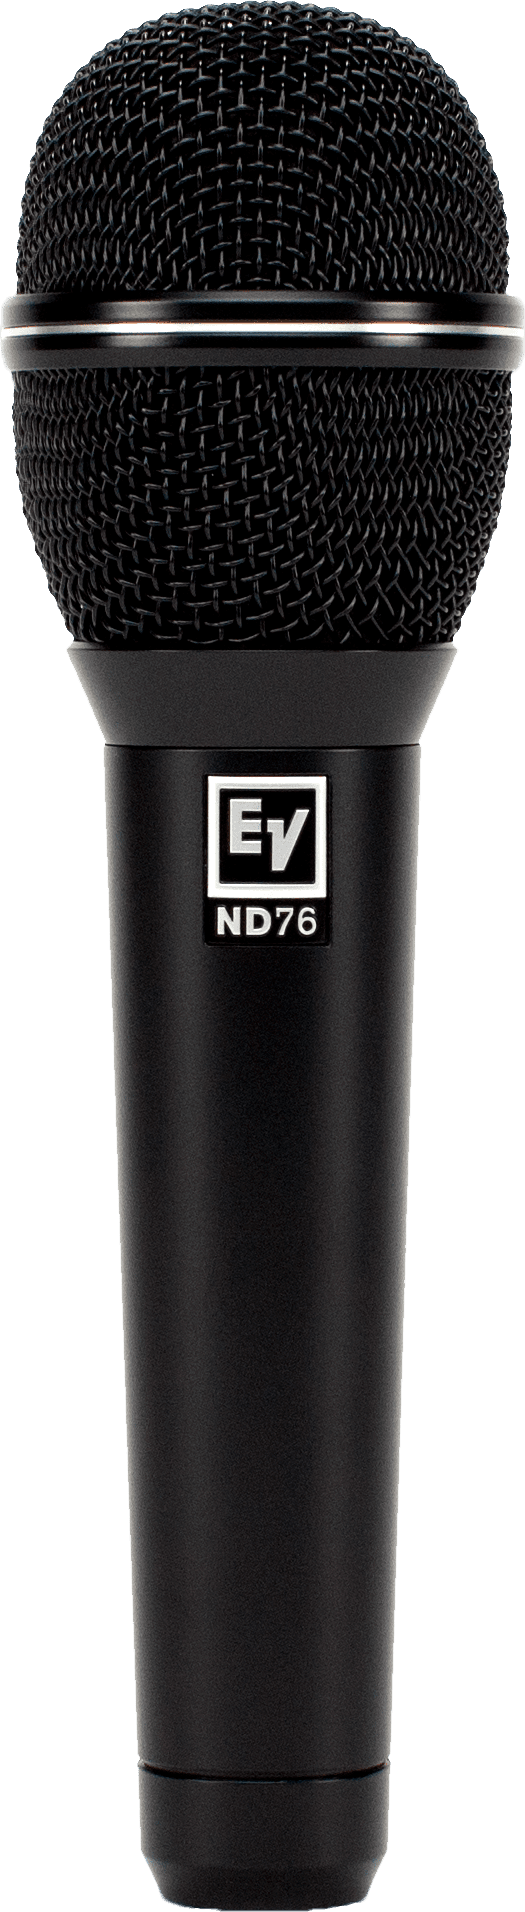 Electro-Voice EV ND76